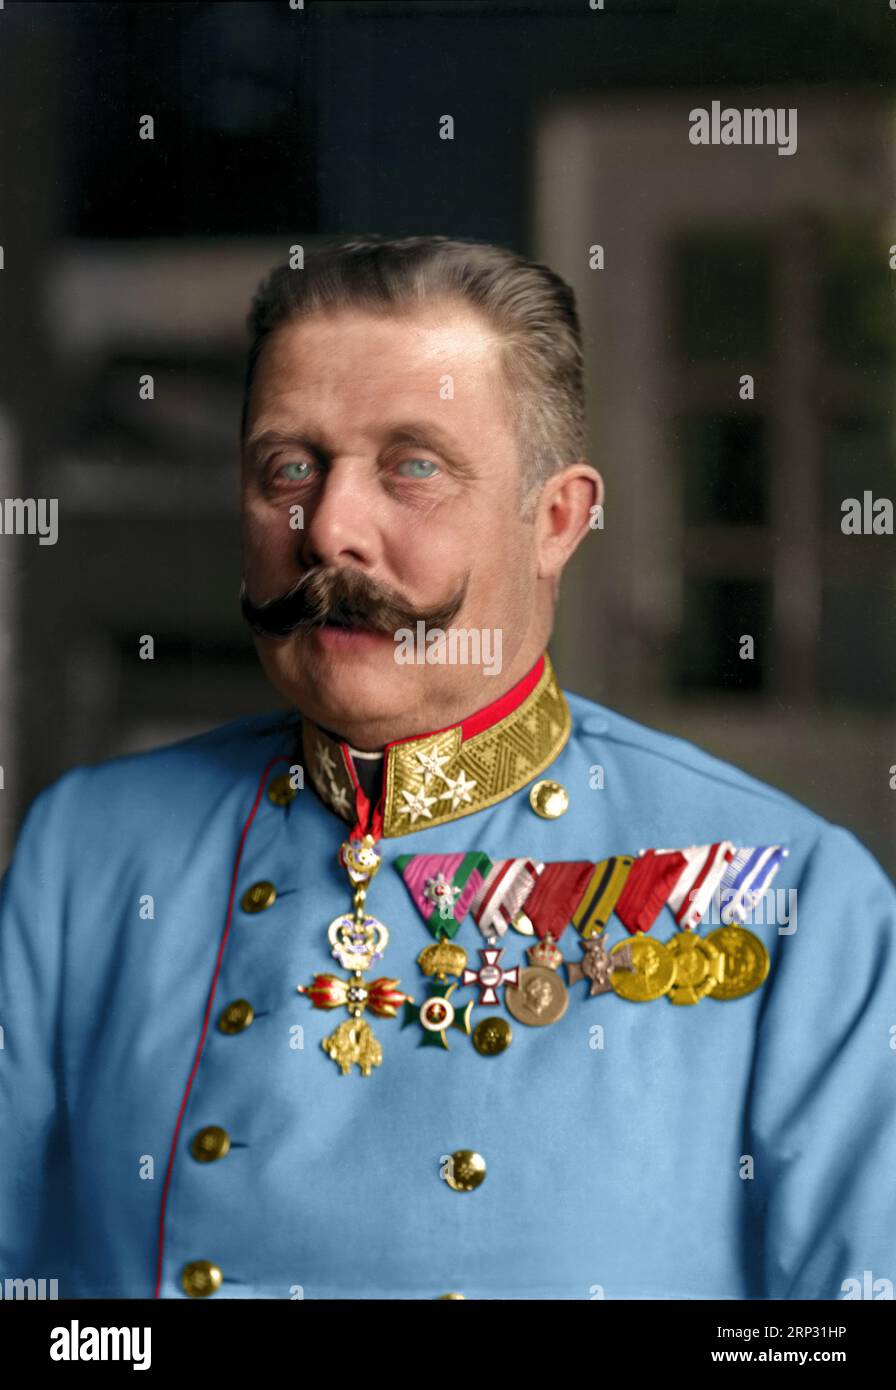 Portrait de François-Ferdinand, archiduc d'Autriche-Este (1863-1914) en uniforme. circa 1914. C'est le même uniforme qu'on lui a tiré dessus. Banque D'Images